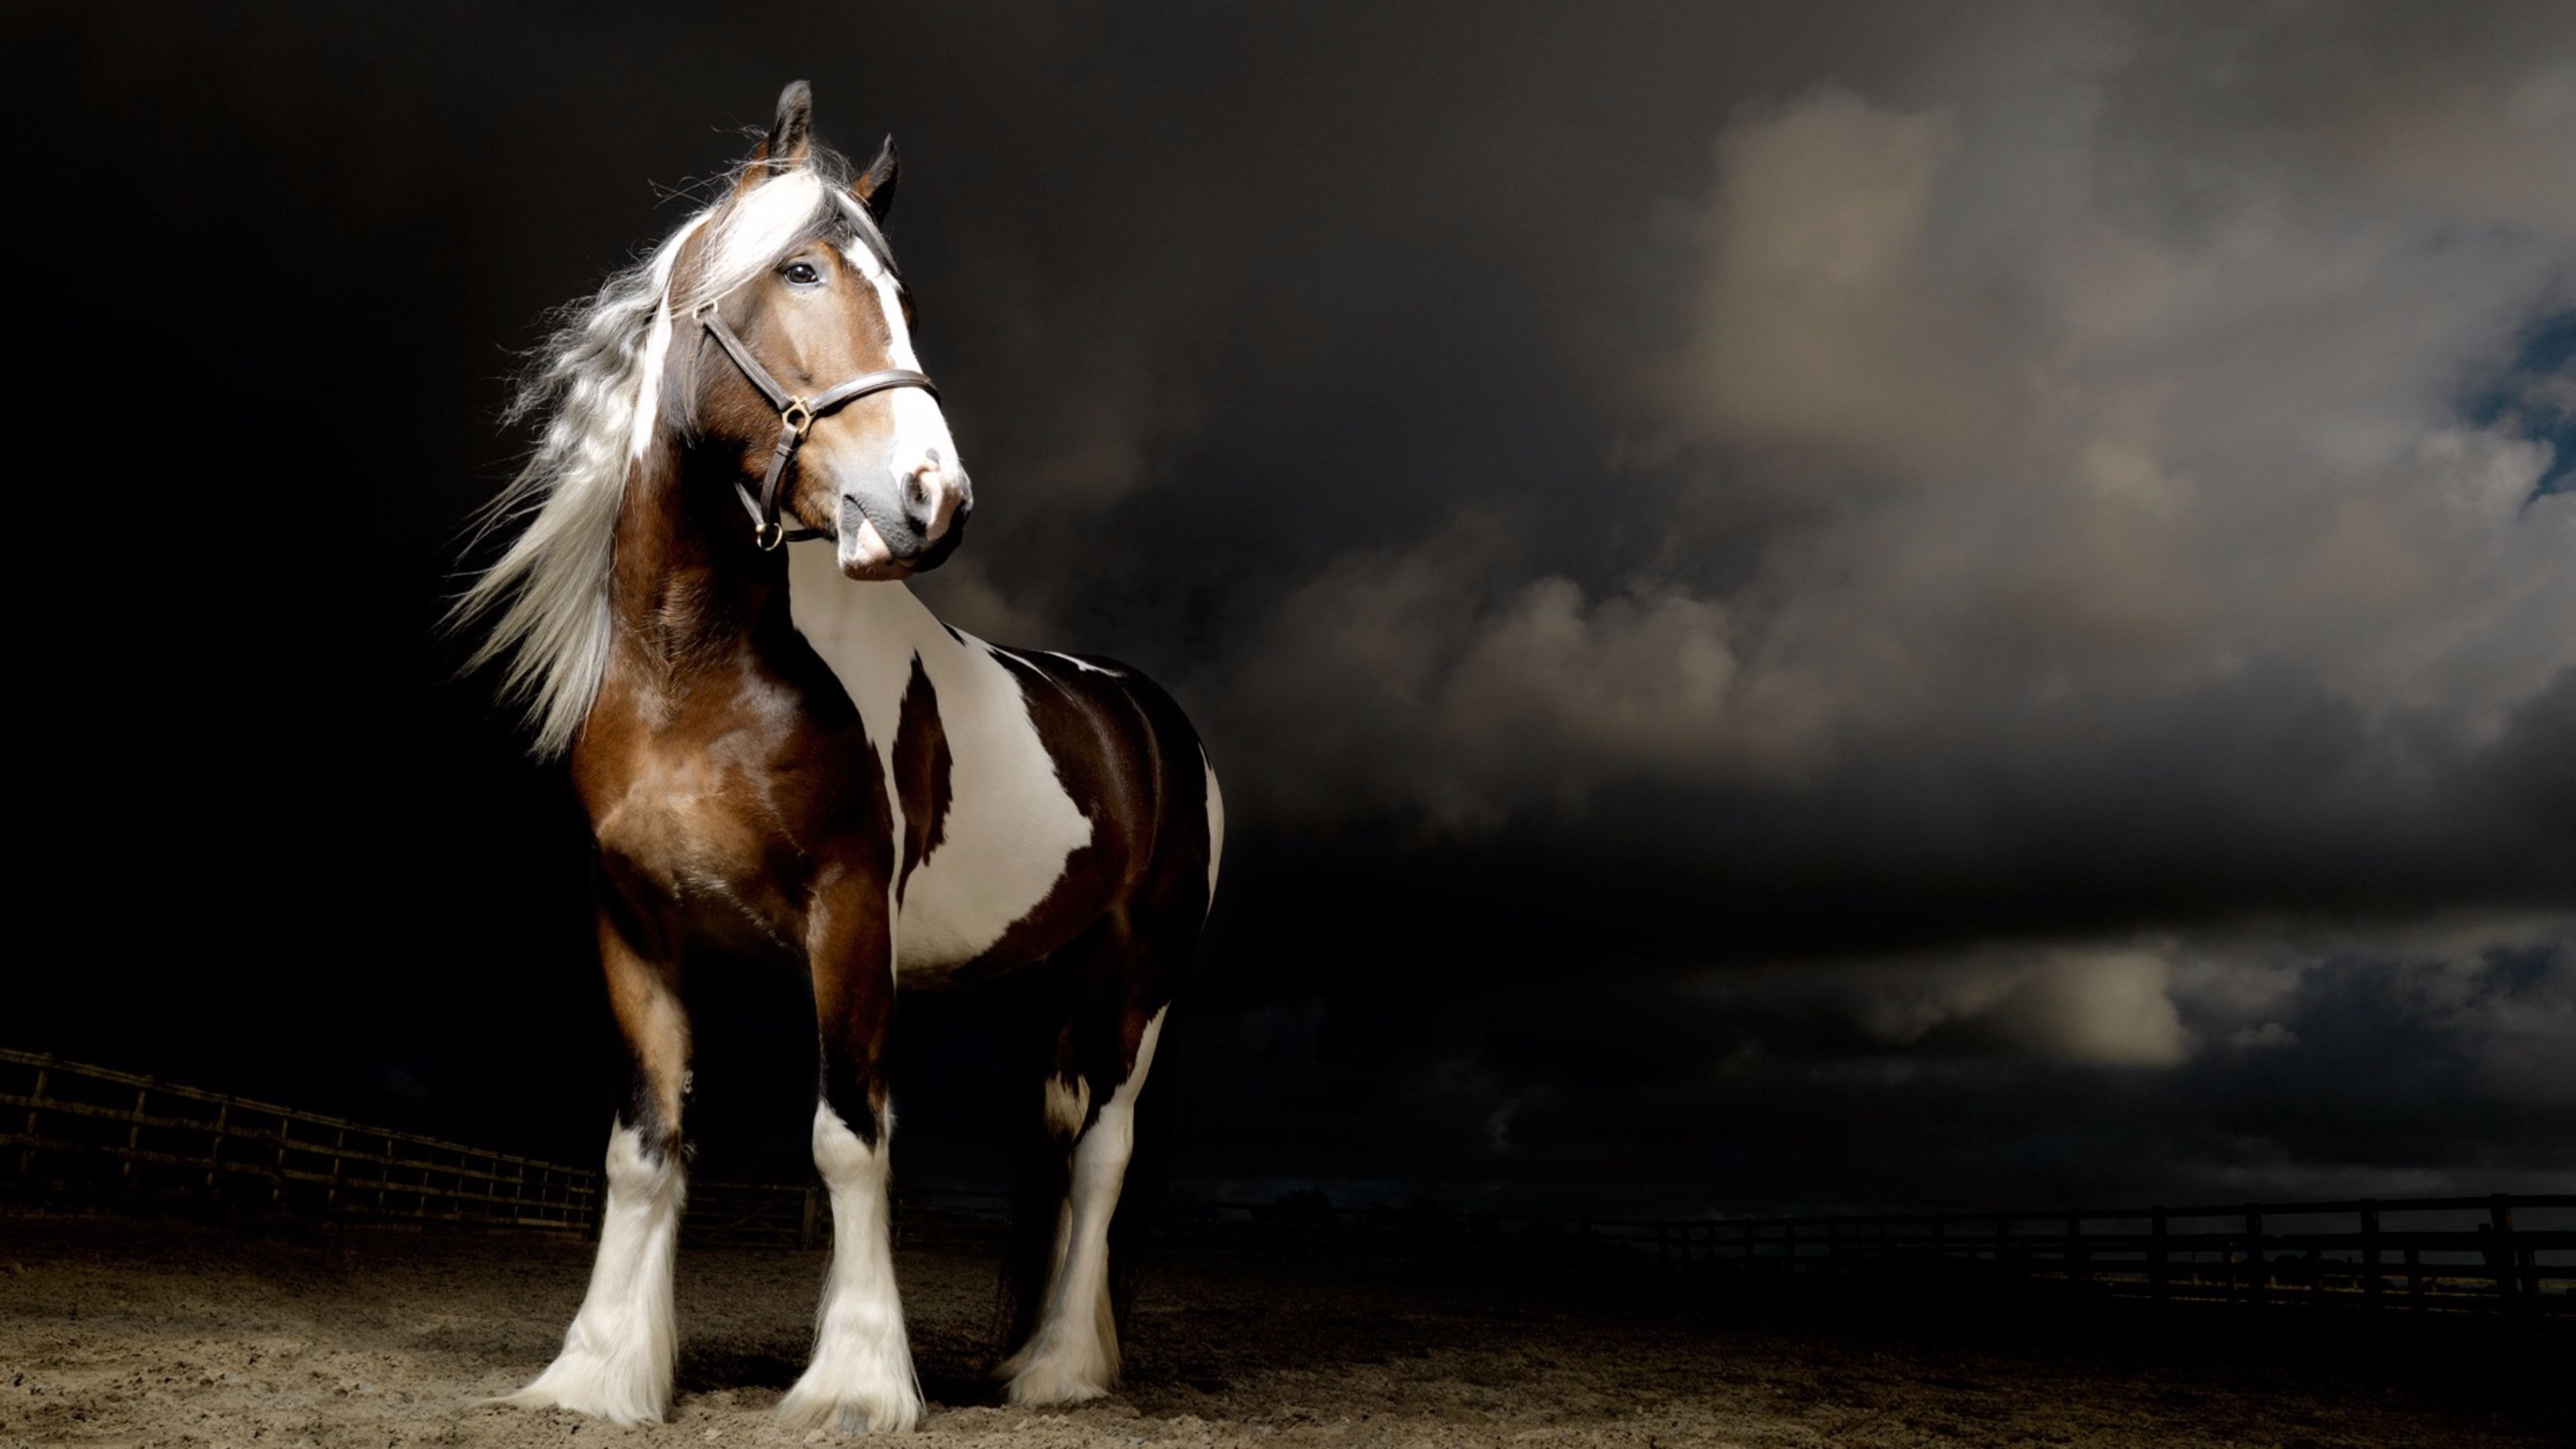 Обои на рабочий лошадь. Лошади. Лошади на заставку. Красивая белая лошадь. Заставка на рабочий стол лошади.